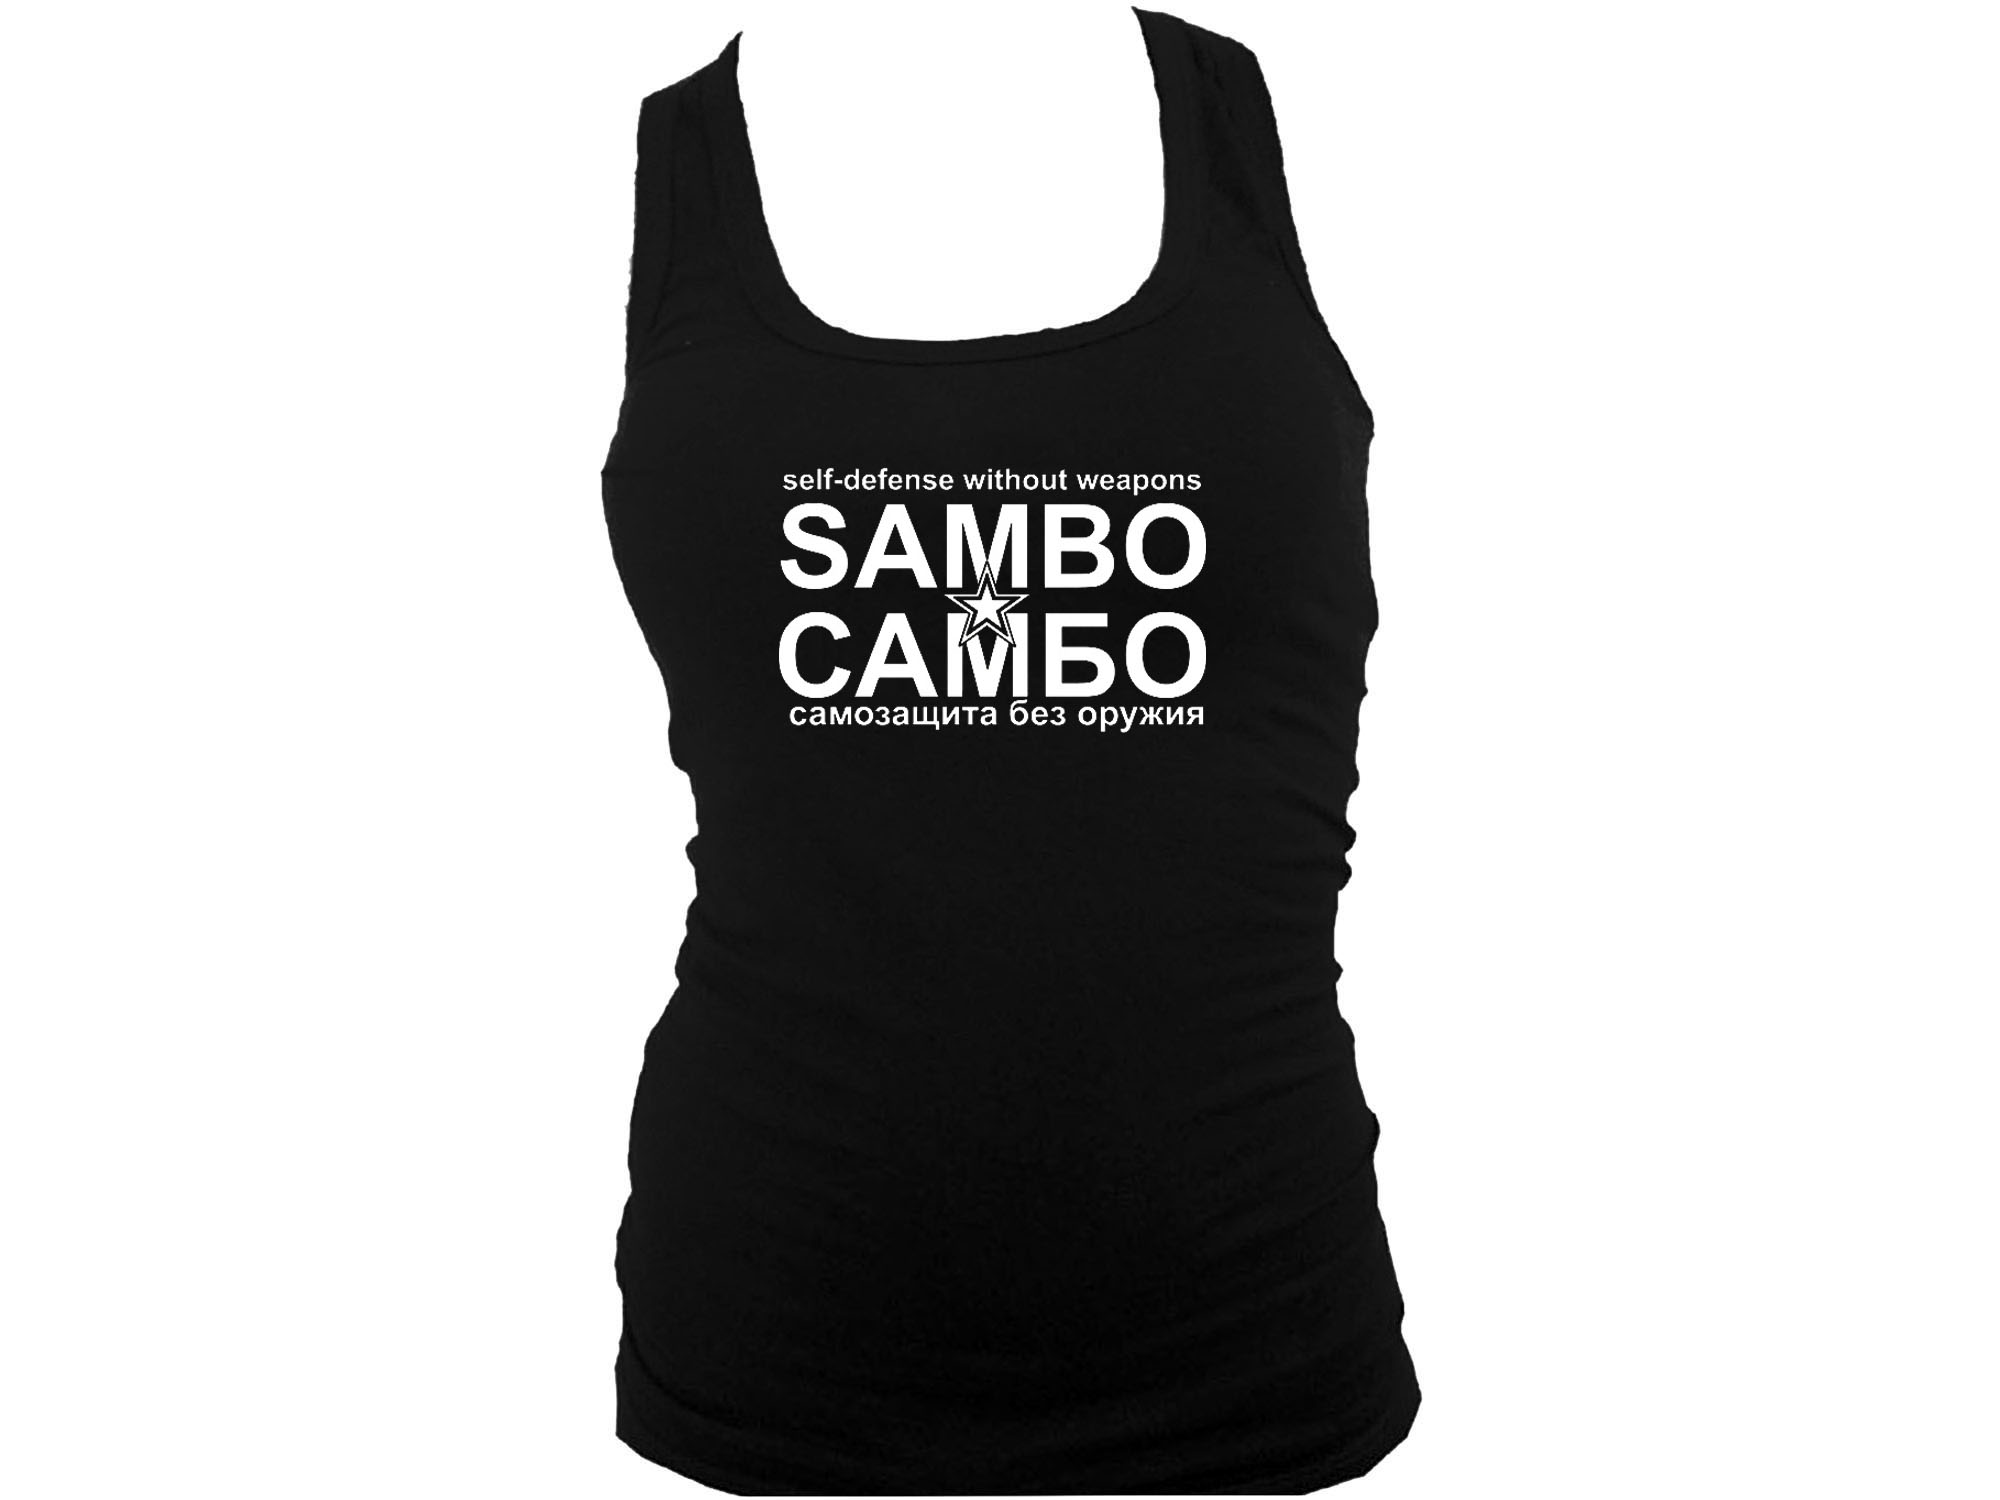 Sambo cambo women tank top S/M